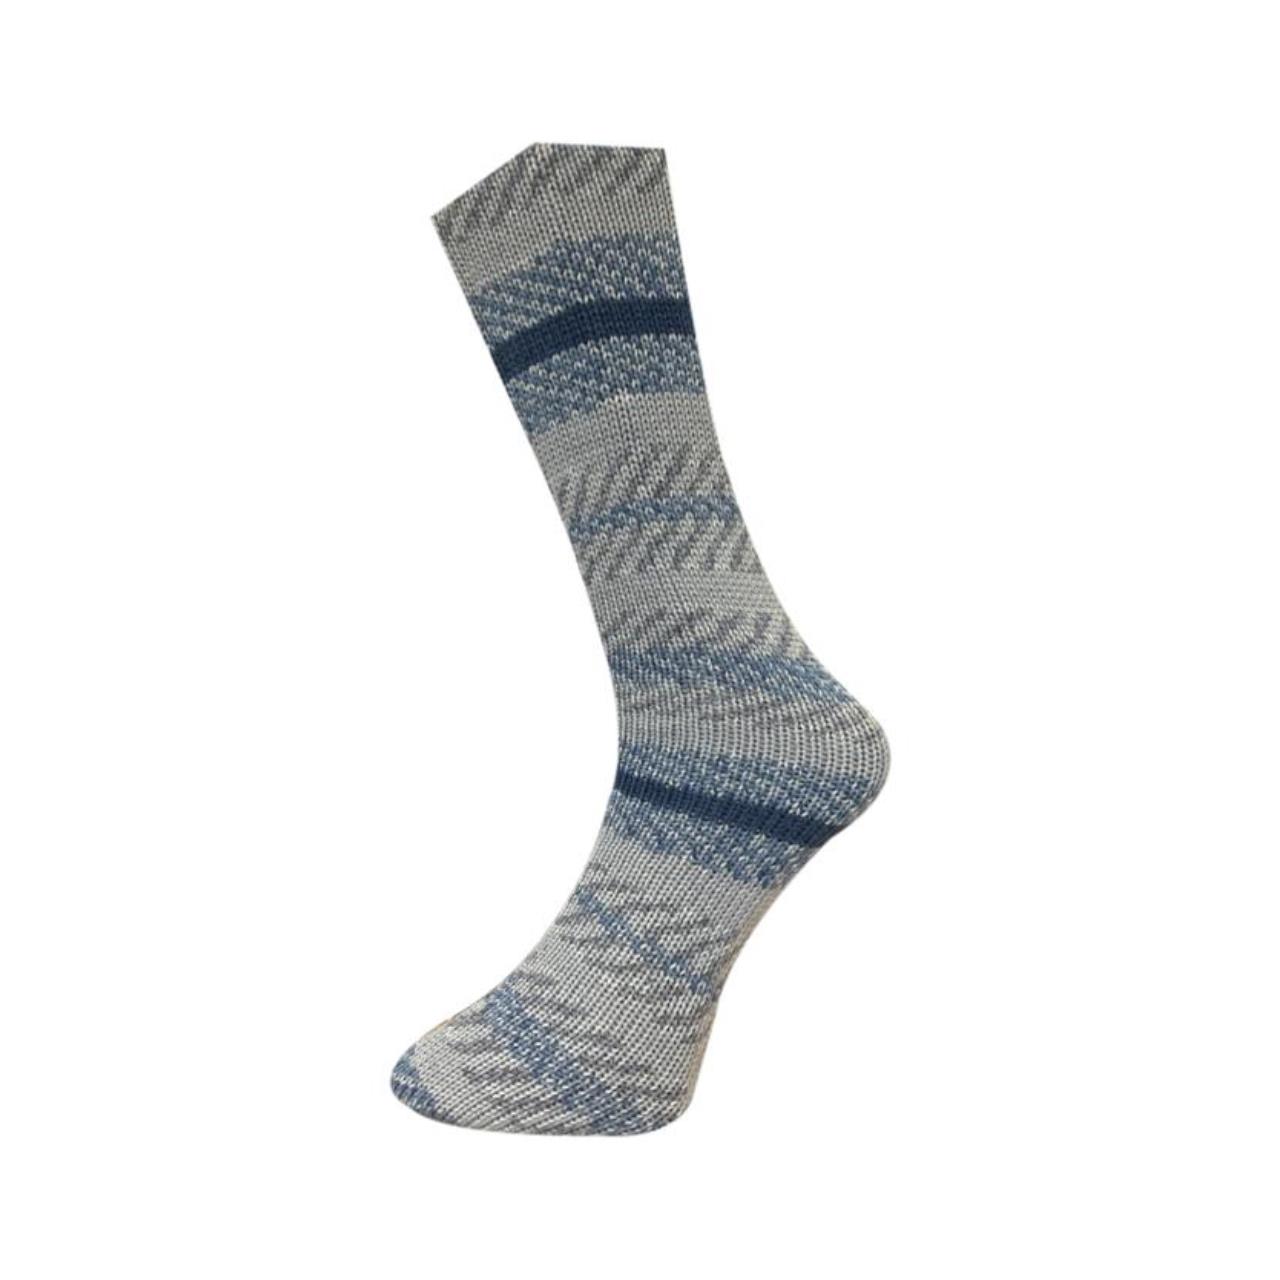 Mally Socks XMAS 20.12.23 Beige-Blau-Braun-Dunkelblau